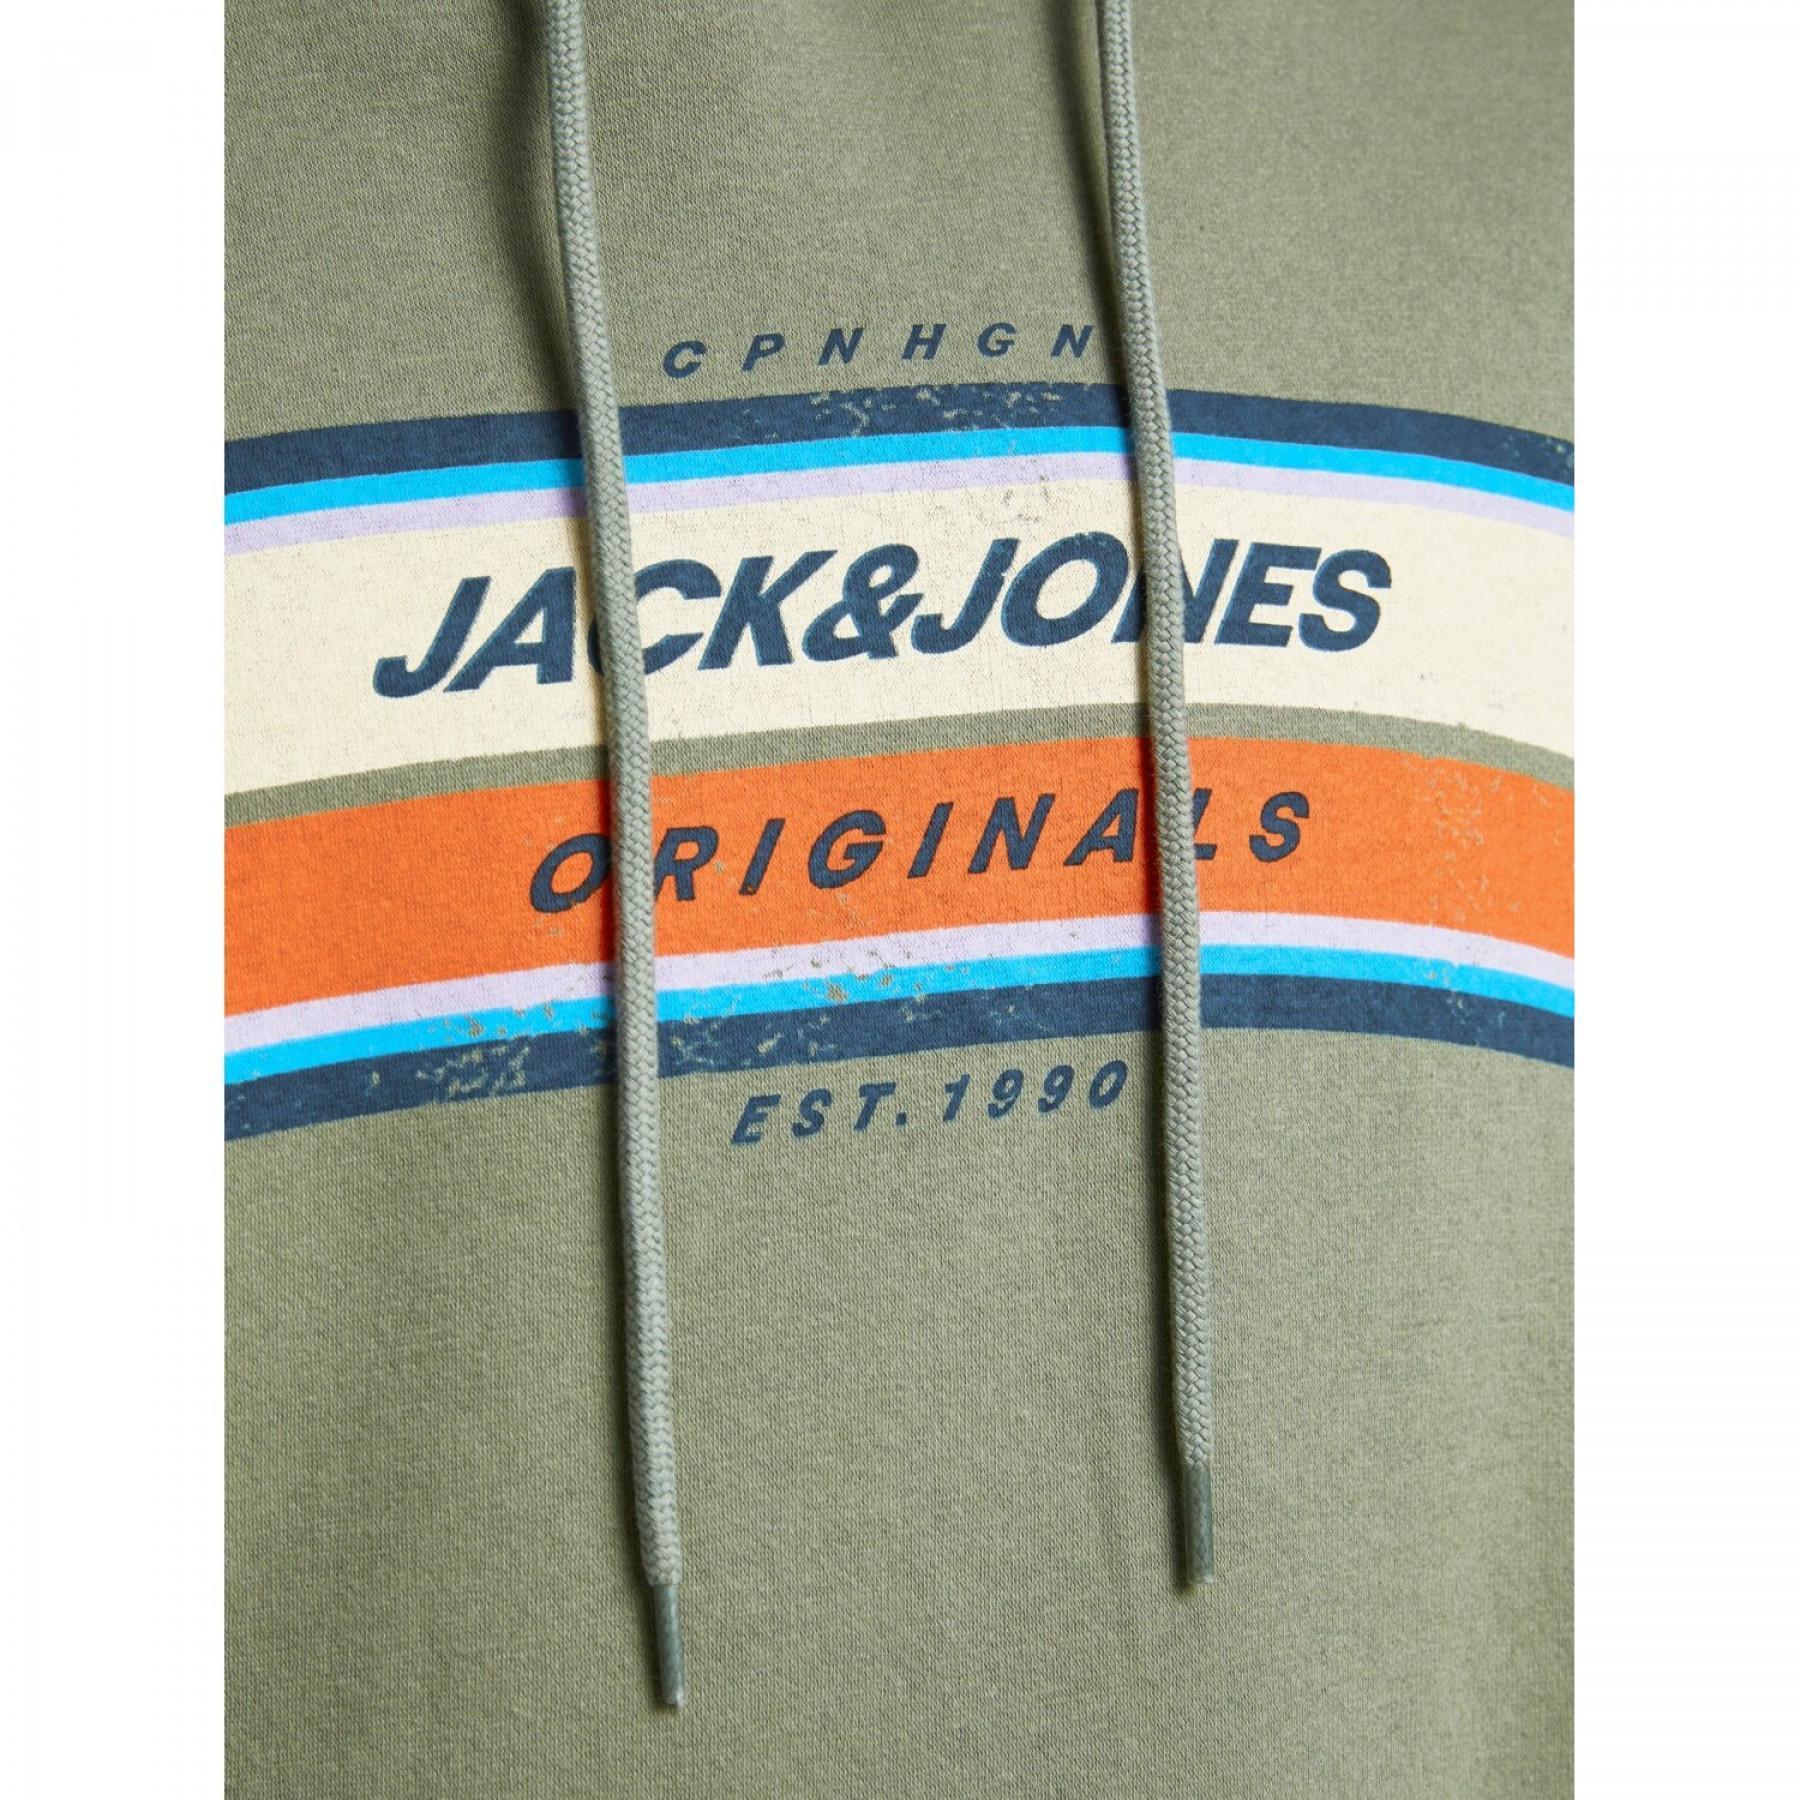 Sweatshirt à capuche Jack & Jones Jortylers